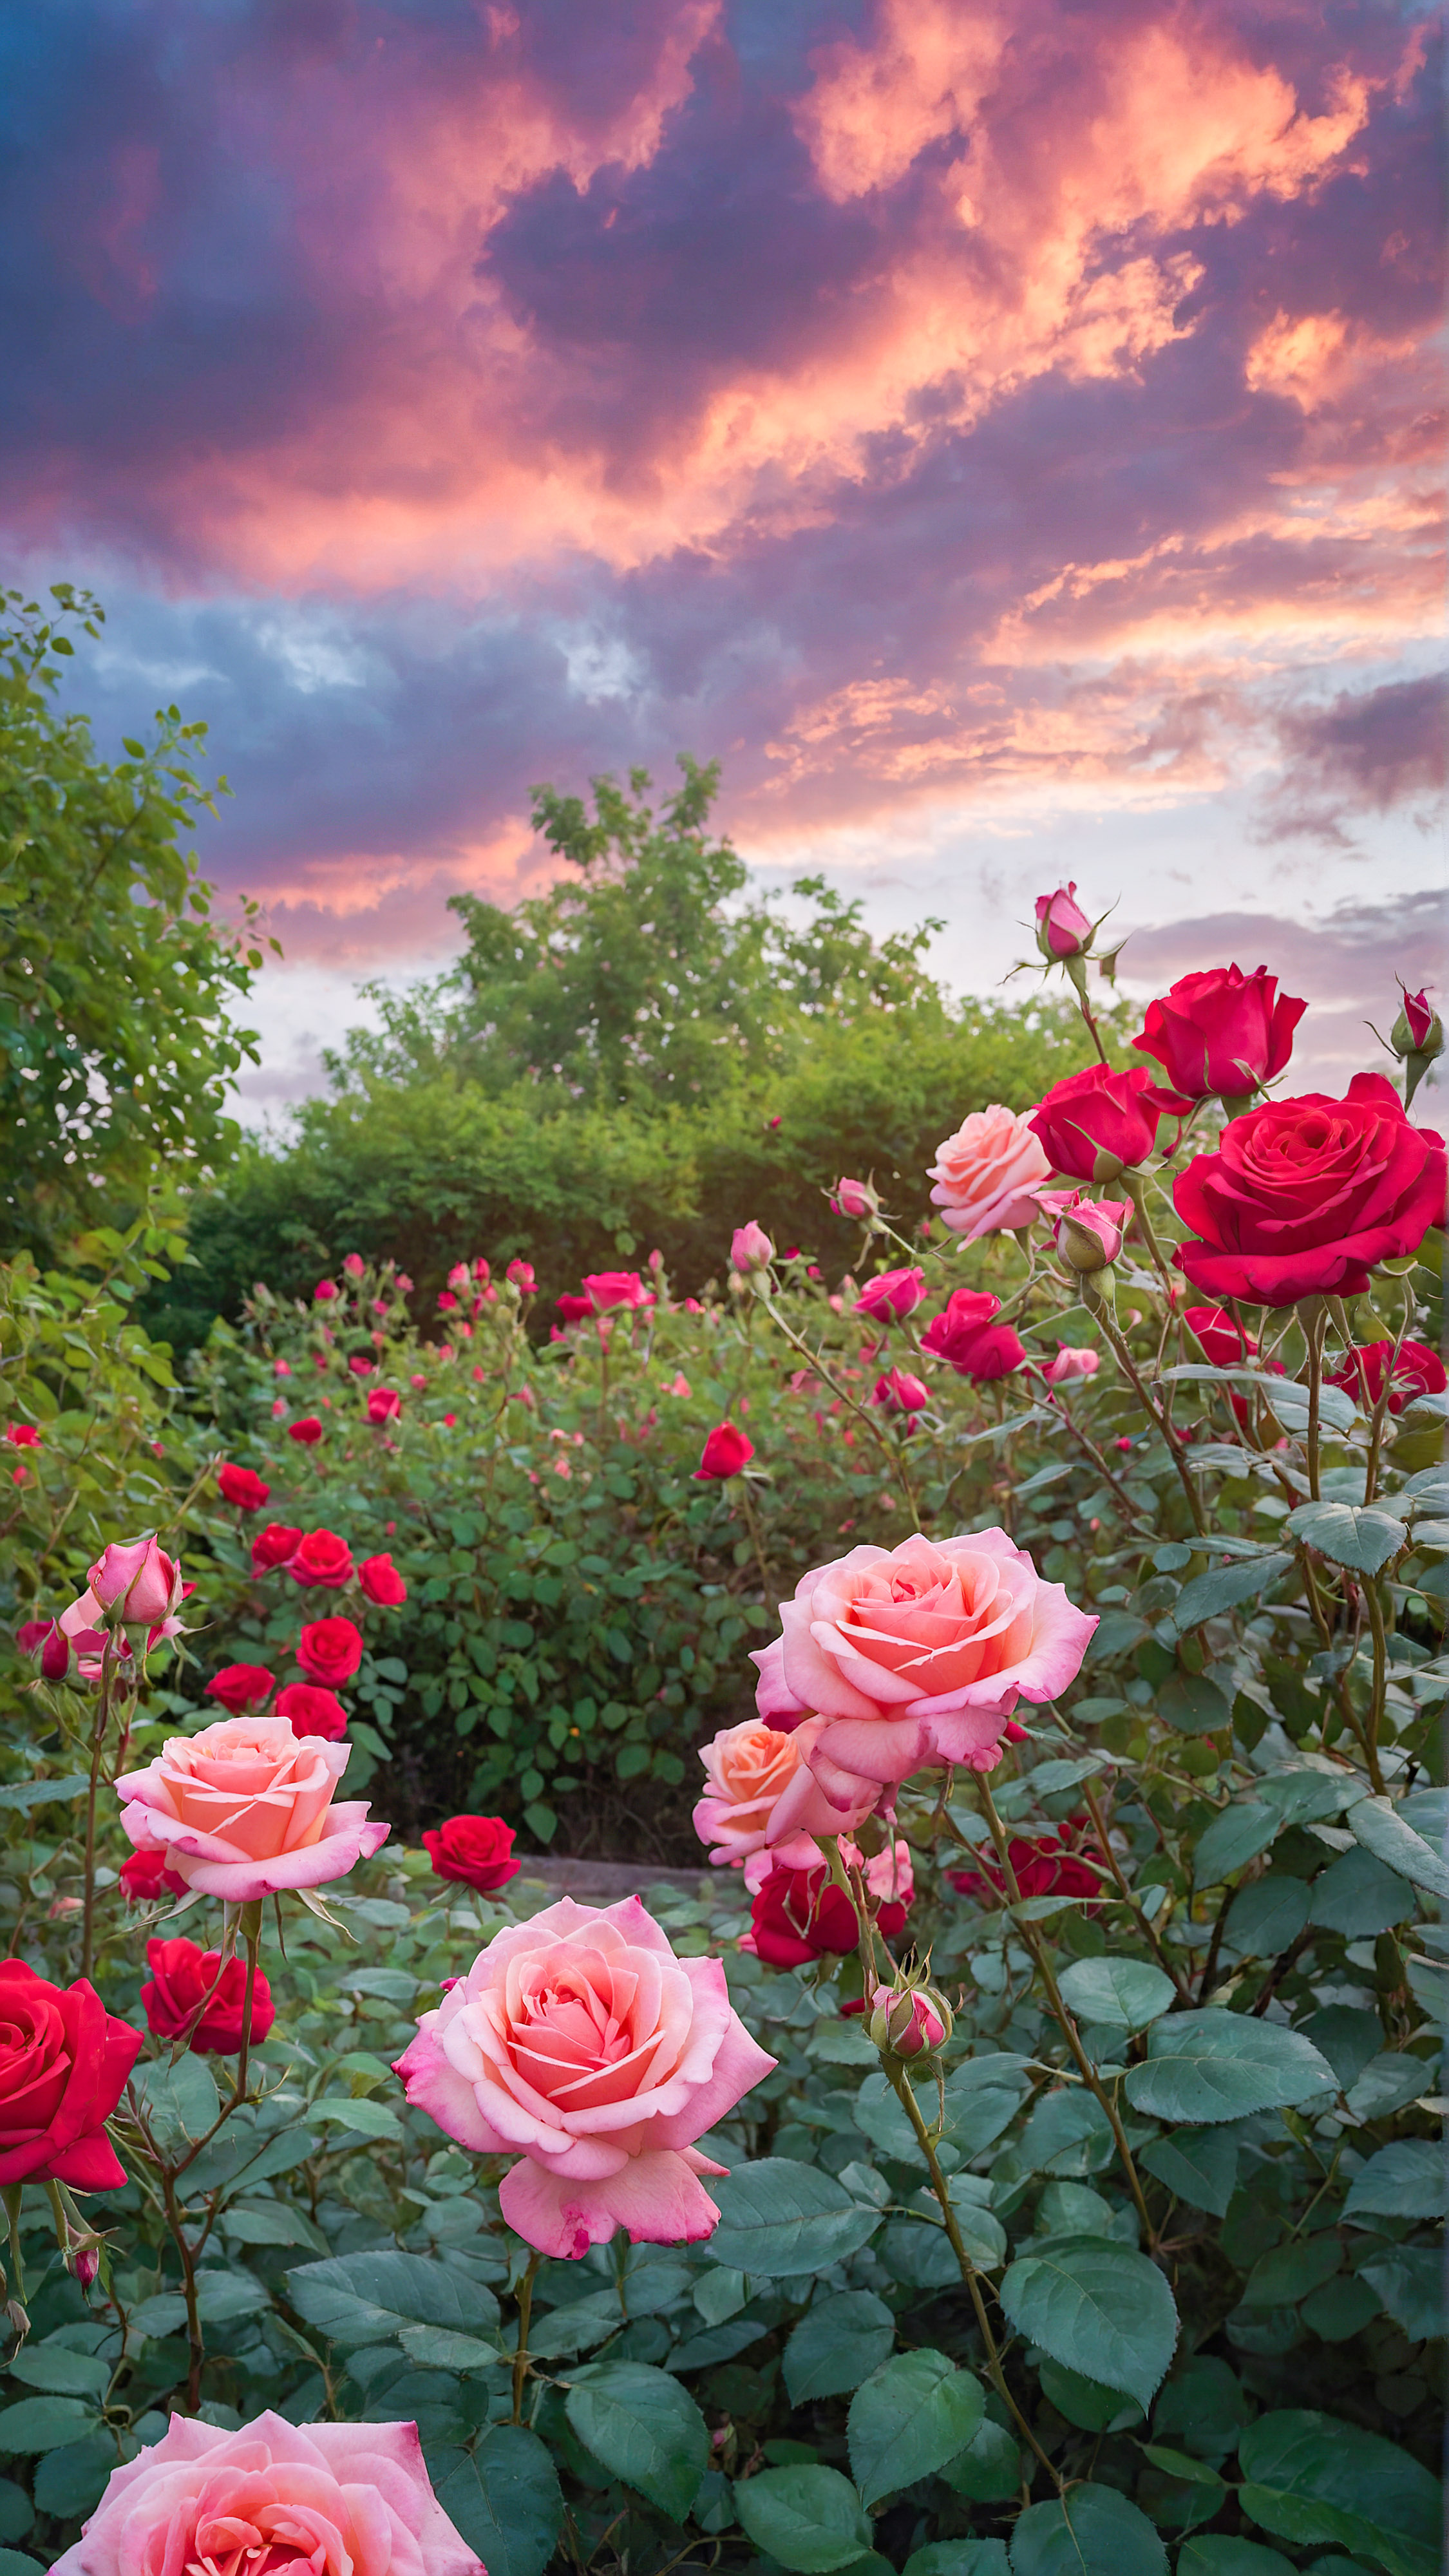 Transformez l'apparence de votre appareil avec un fond d'écran iPhone HD mignon, présentant un jardin vibrant rempli de roses roses et rouges en fleurs sous un ciel lumineux et nuageux.